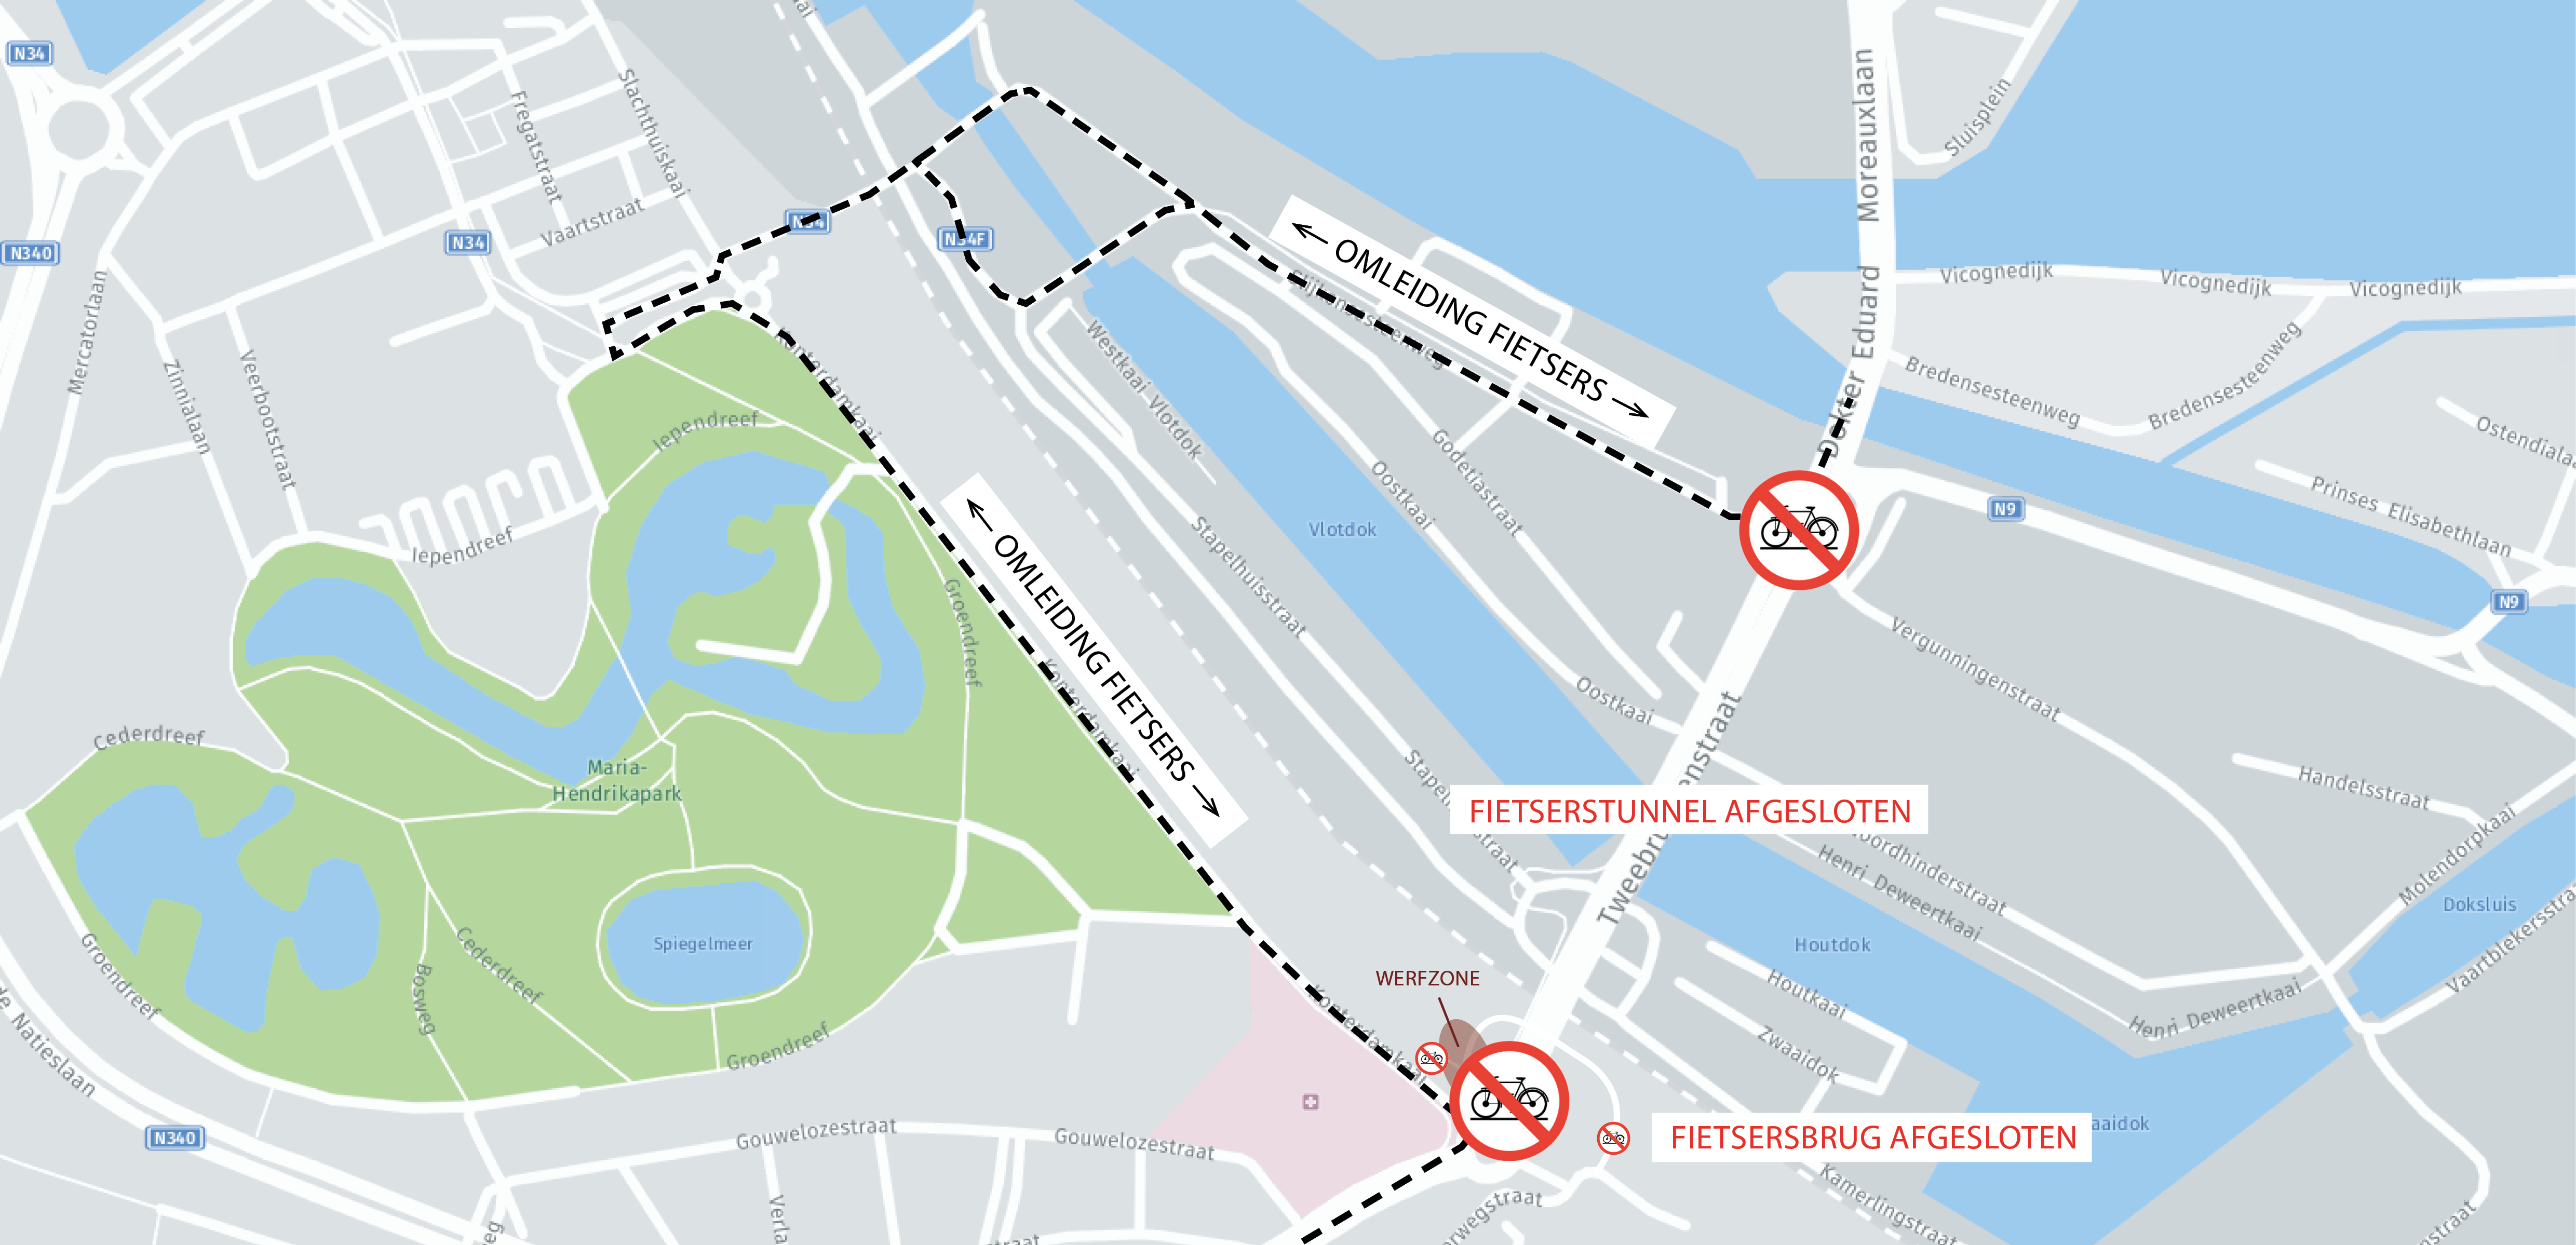 plan onderbreking fietsersbrug en fietserstunnel hijswerken leidingbrug Warmtenet Oostende